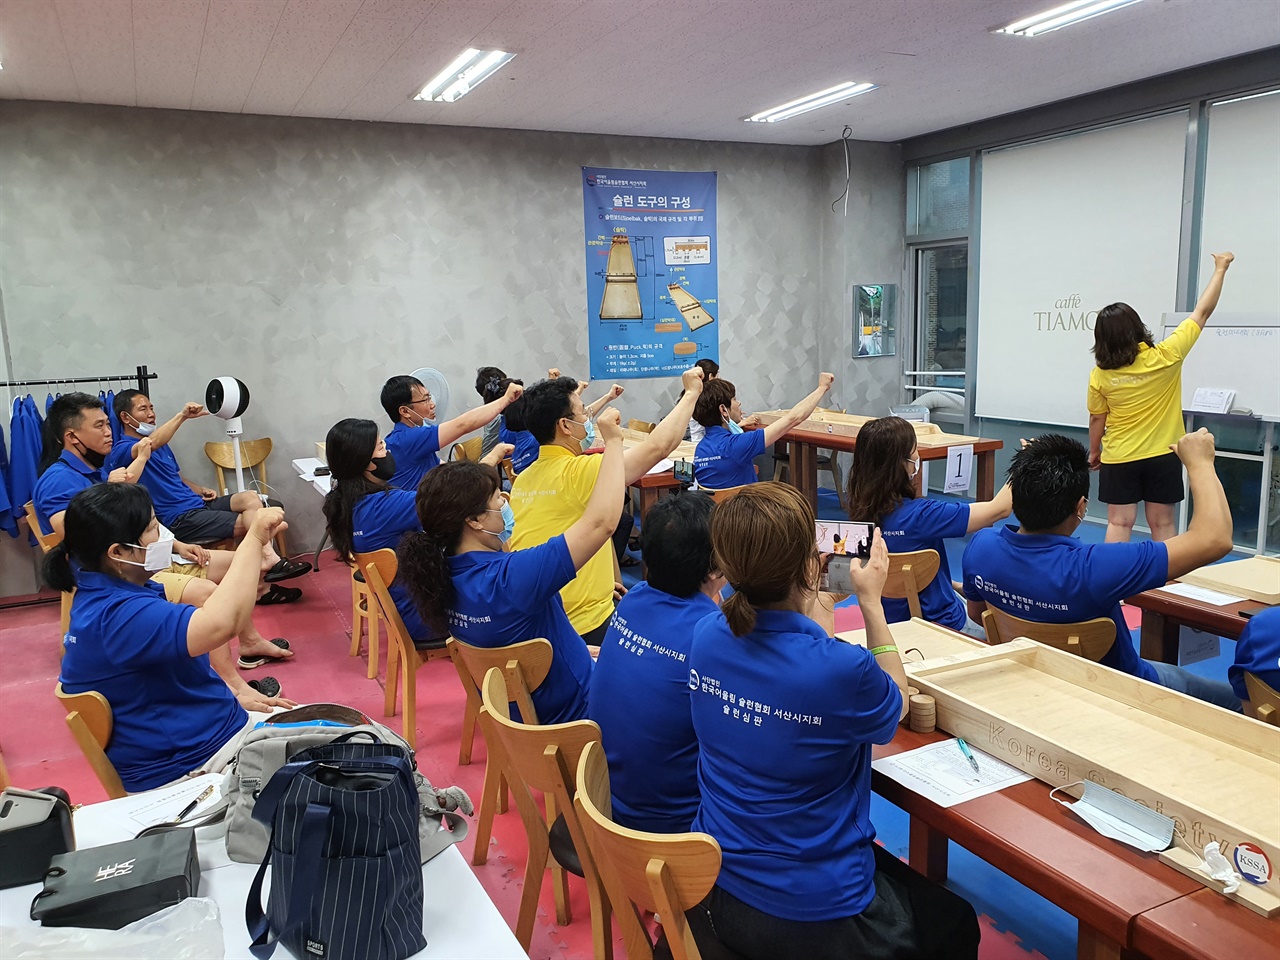 한국어울림슐런협회 서산시지회는 매주 30여 명의 회원들이 모여 자체대회를 개최하고 붐 조성에 나서고 있다. 연습장을 찾은 지난 9일 슐런 보수교육이 있었다.